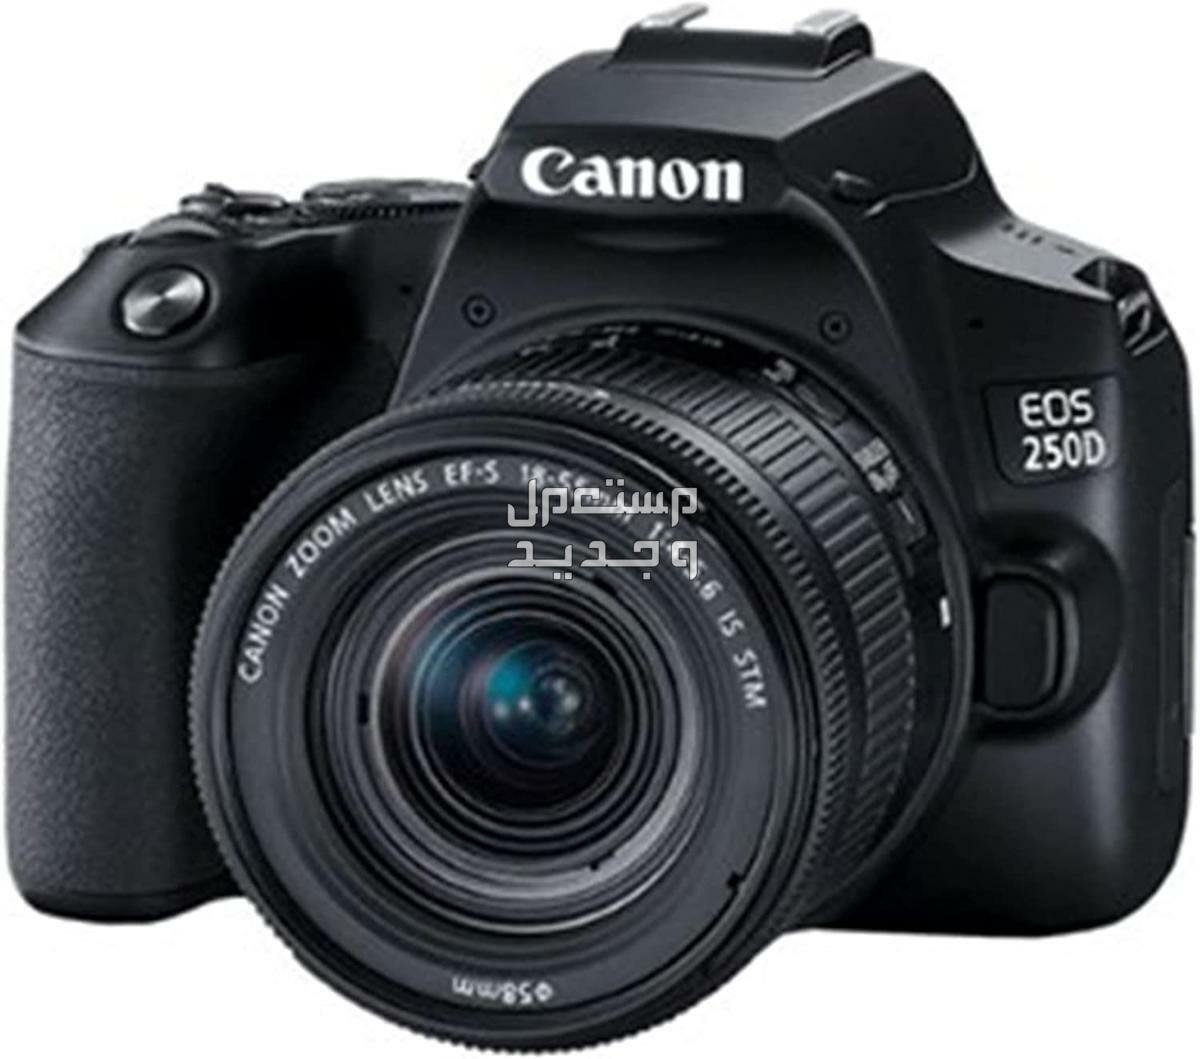 سعر ومميزات ومواصفات أرخص 5 كاميرات تصوير من كانون في العراق كاميرا Canon EOS 250D